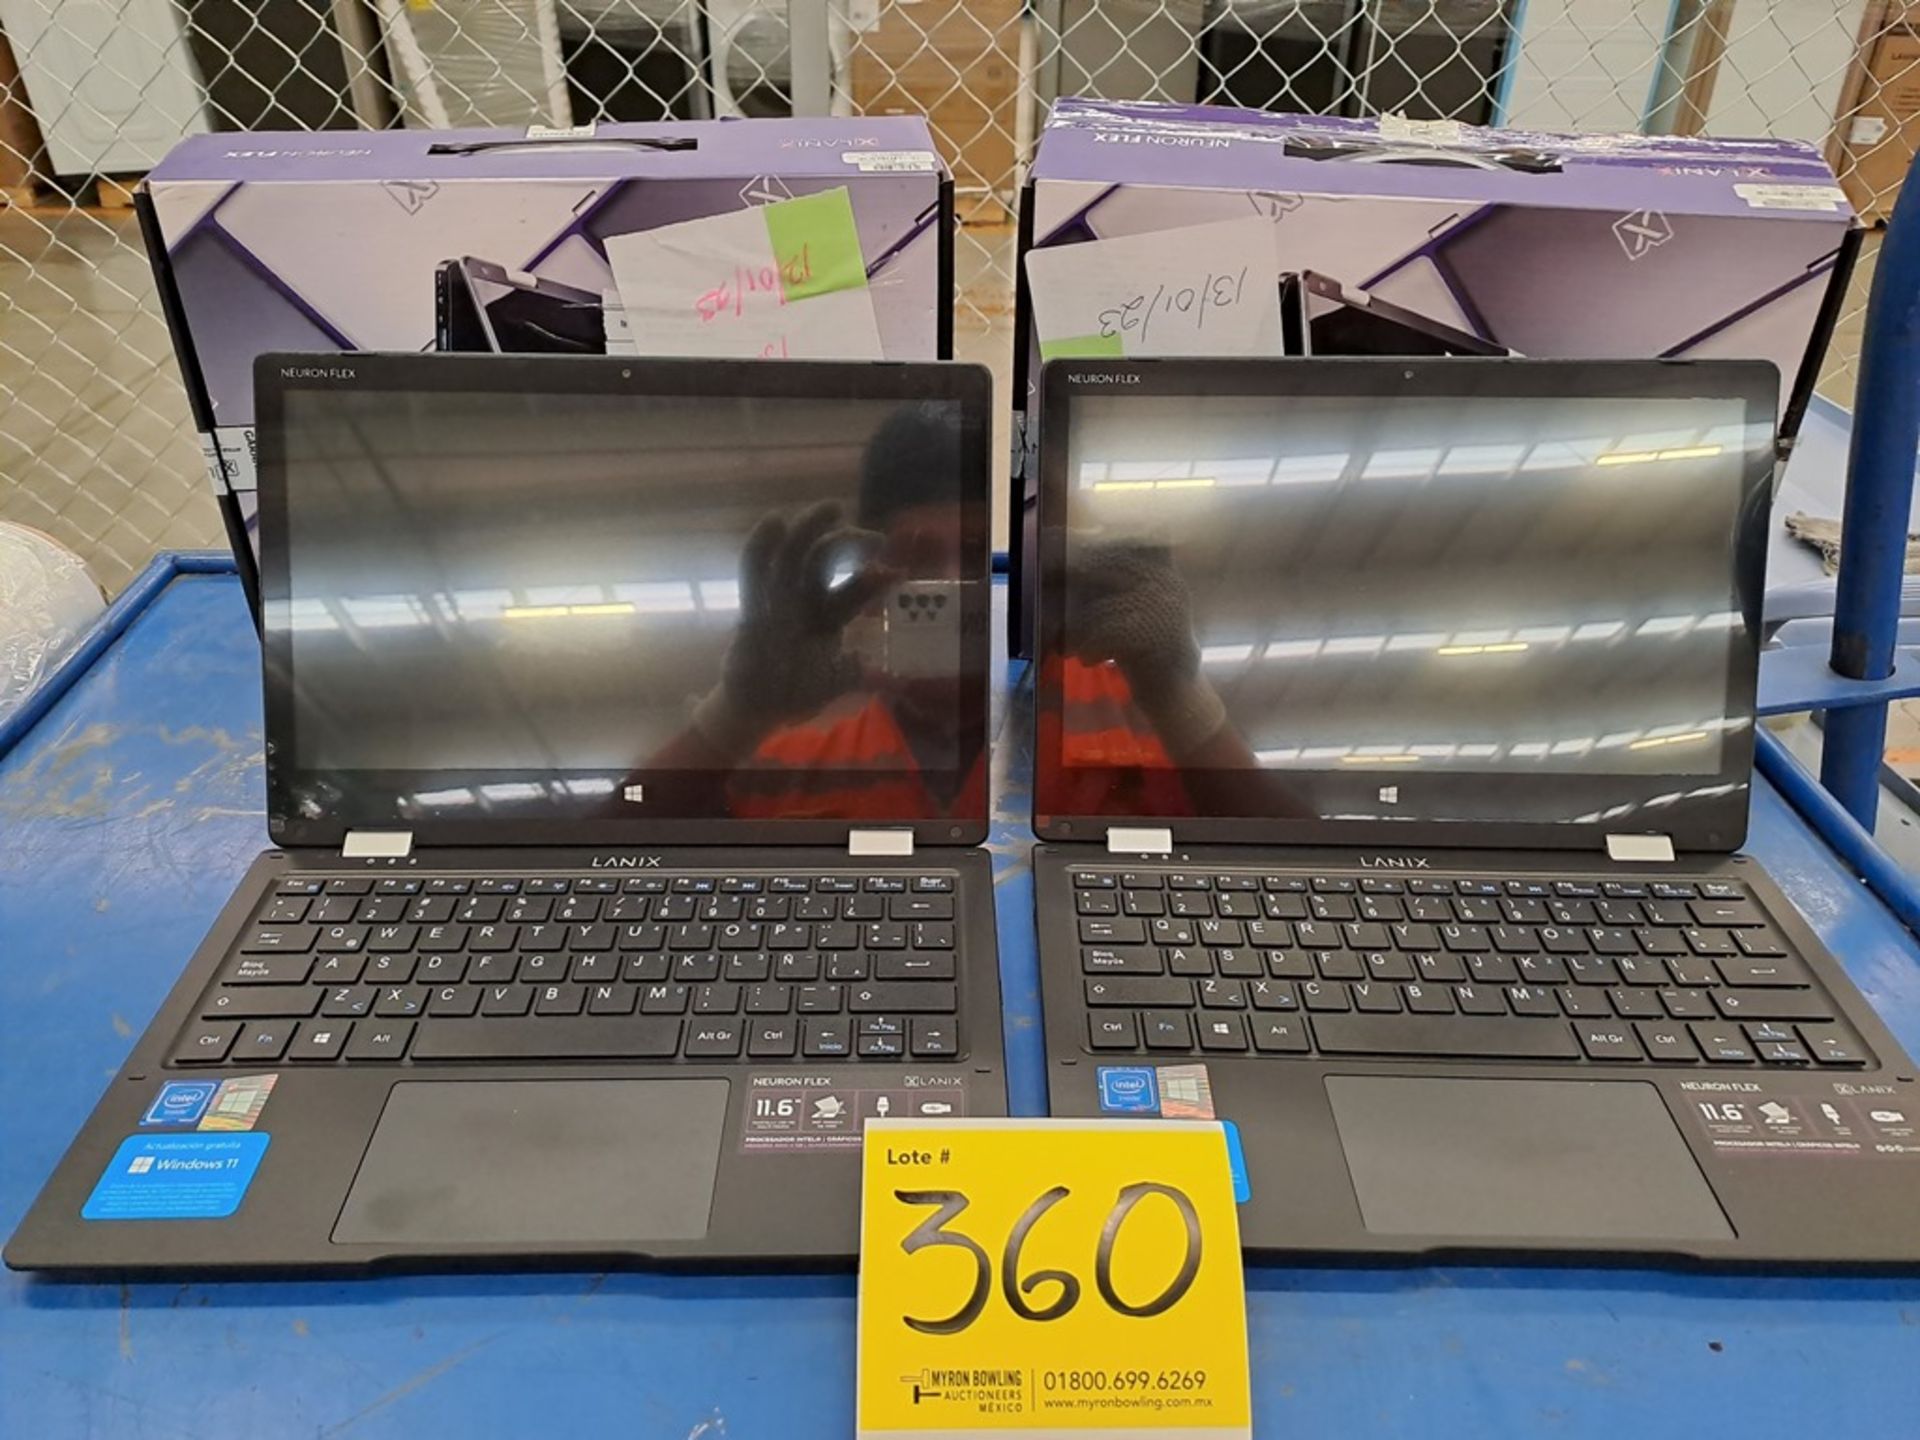 Lote de 2 laptop contiene: 1 laptop marca LANIX modelo NEURON FLEX, serie ND, color NEGRO, procesad